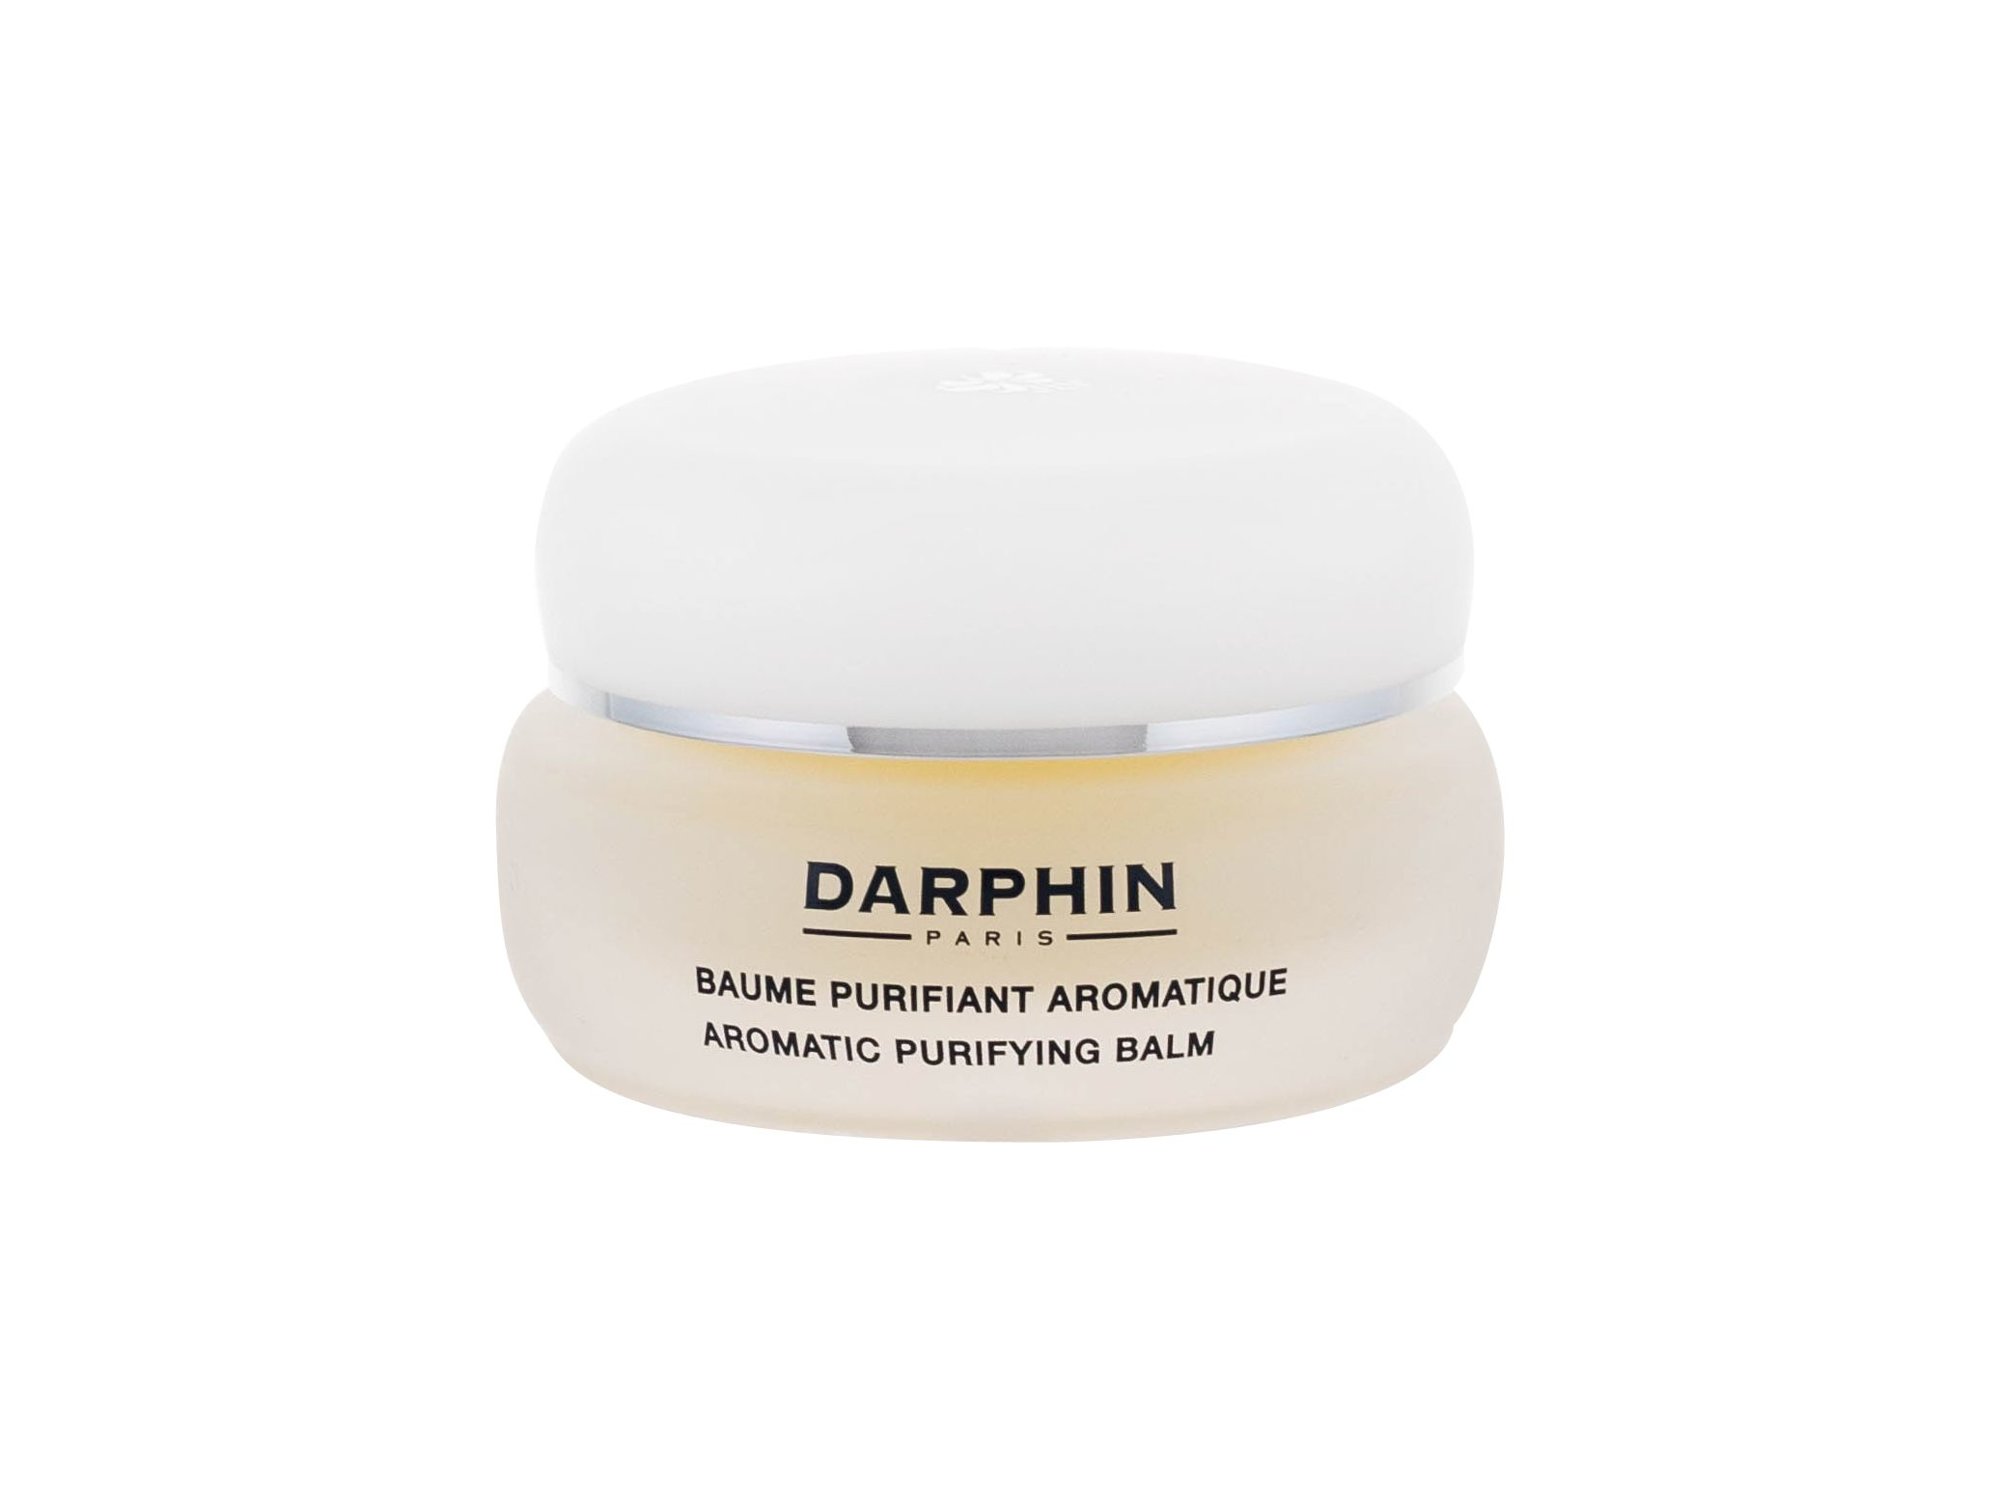 Darphin Specific Care